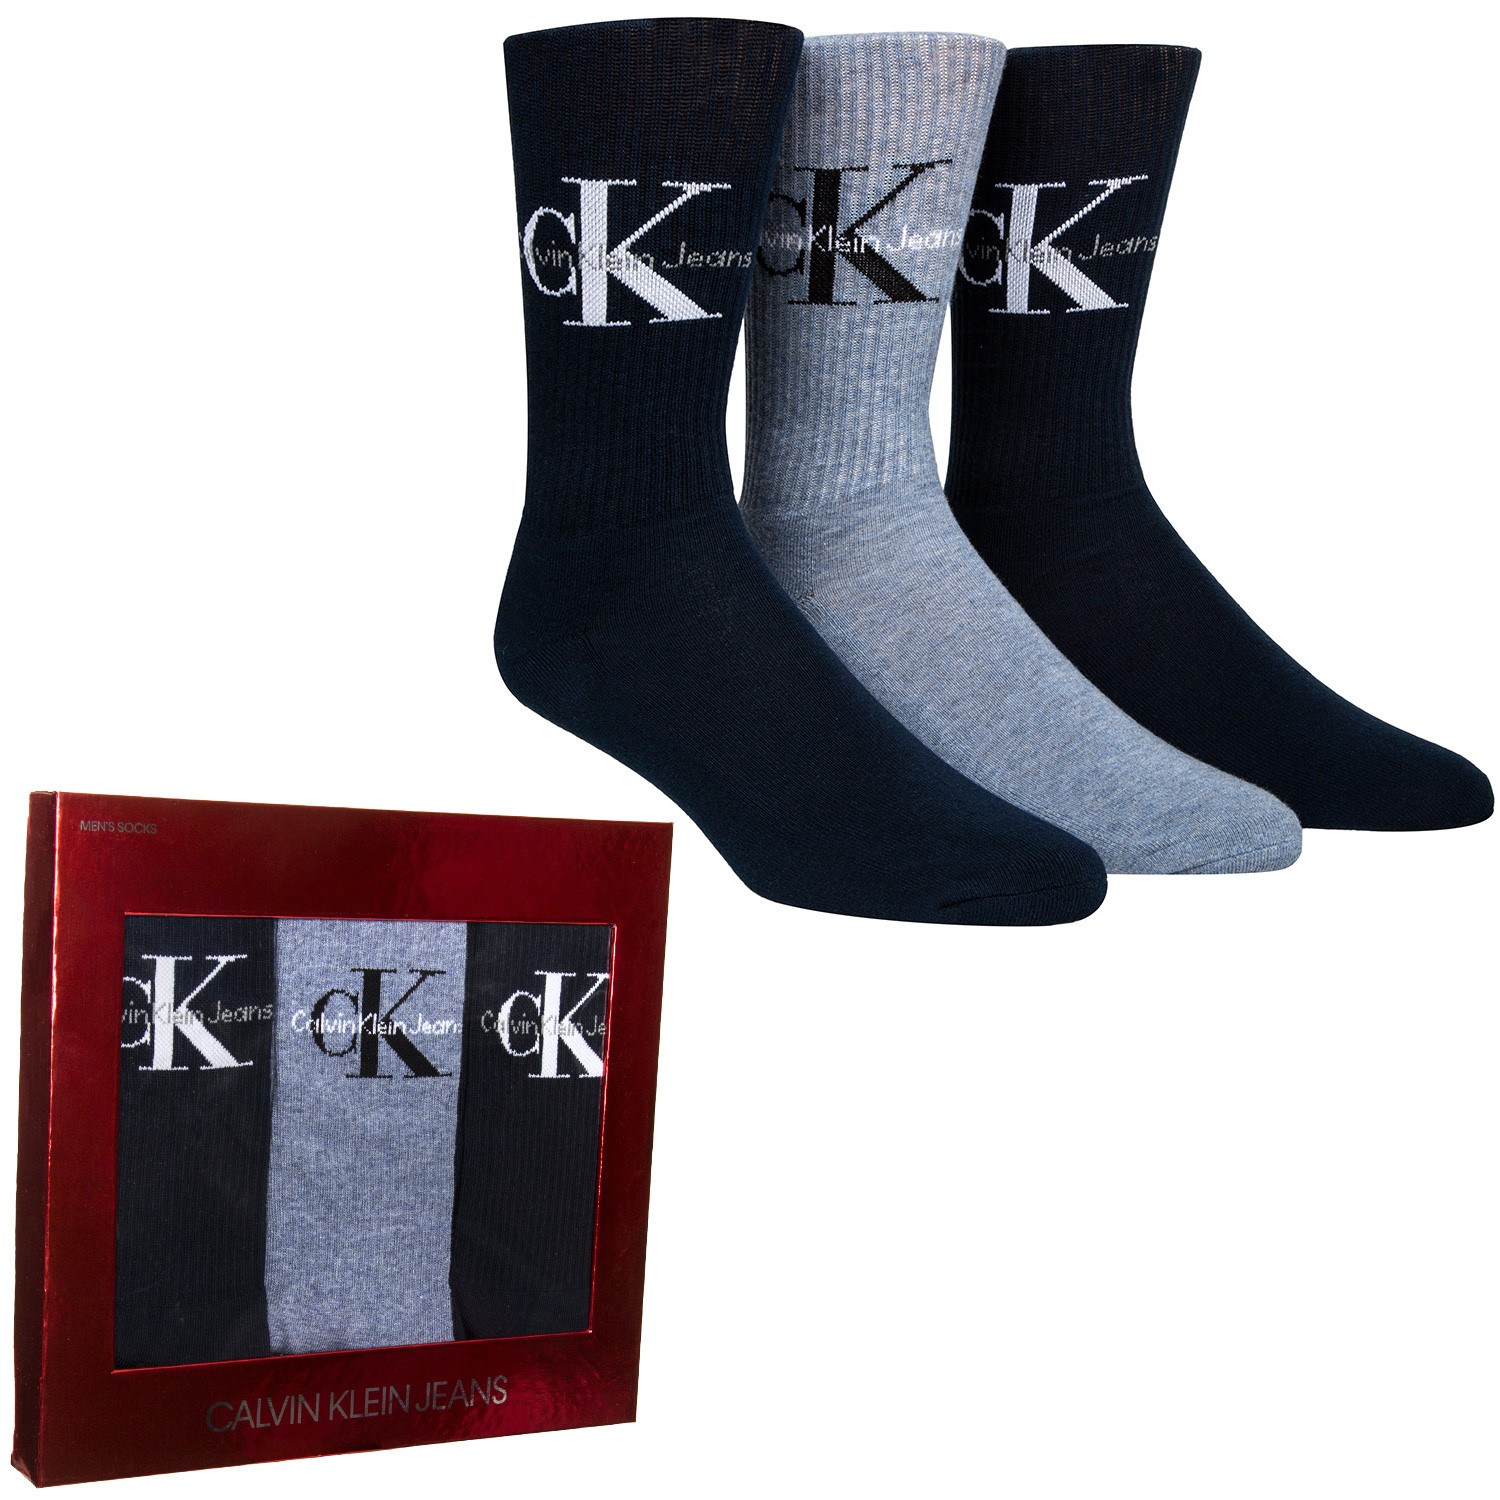 Calvin Klein Domini Retro Logo Socks Gift Box